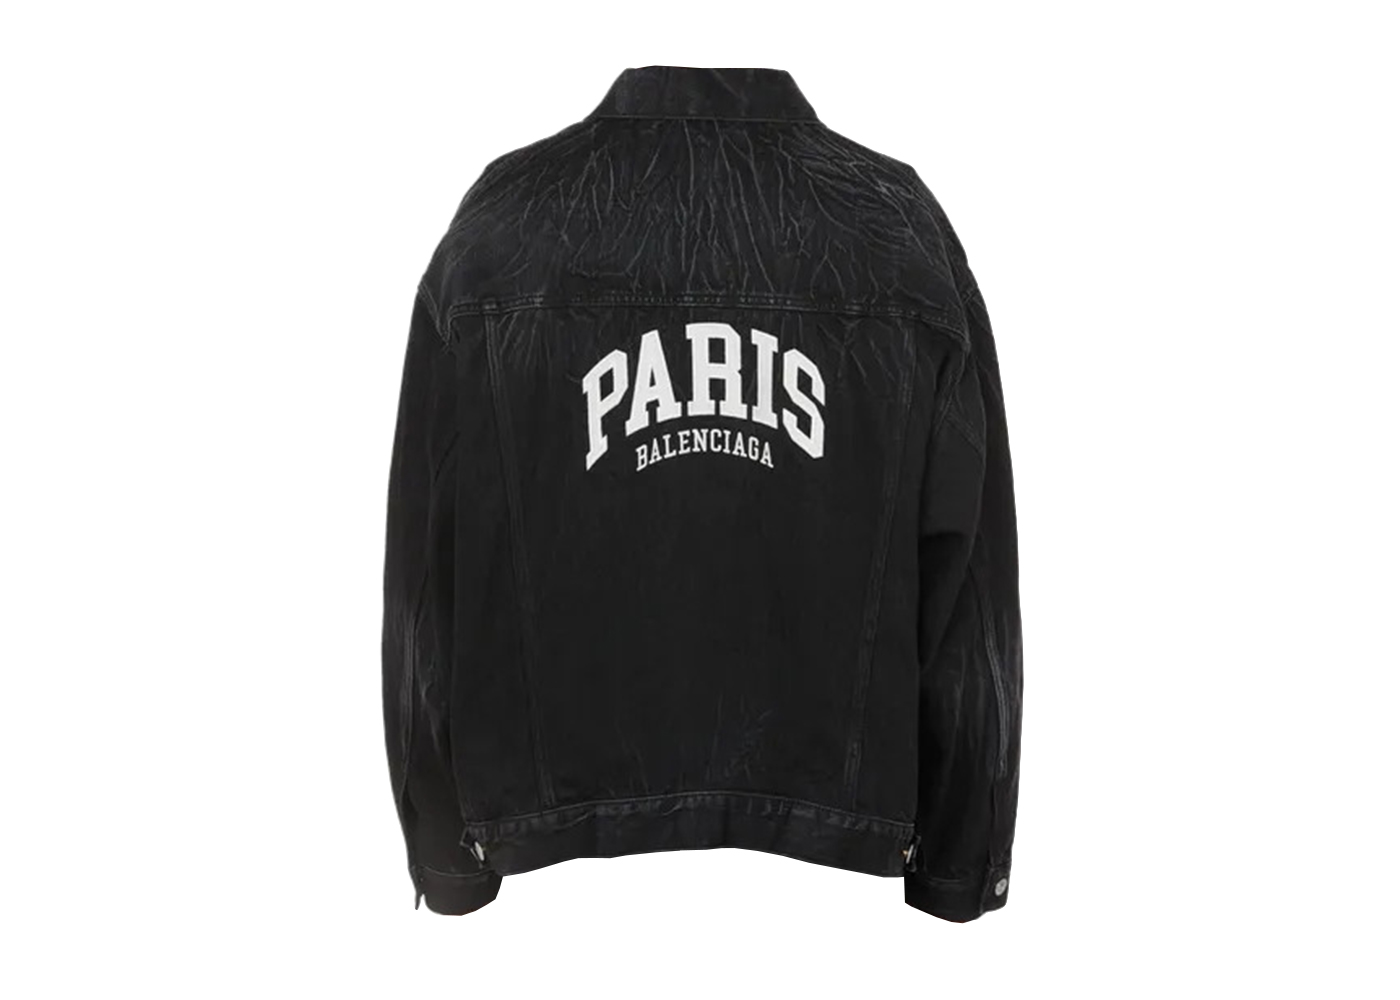 Balenciaga Cities Paris Large Fit Denim Jacket Black/White Men's - US